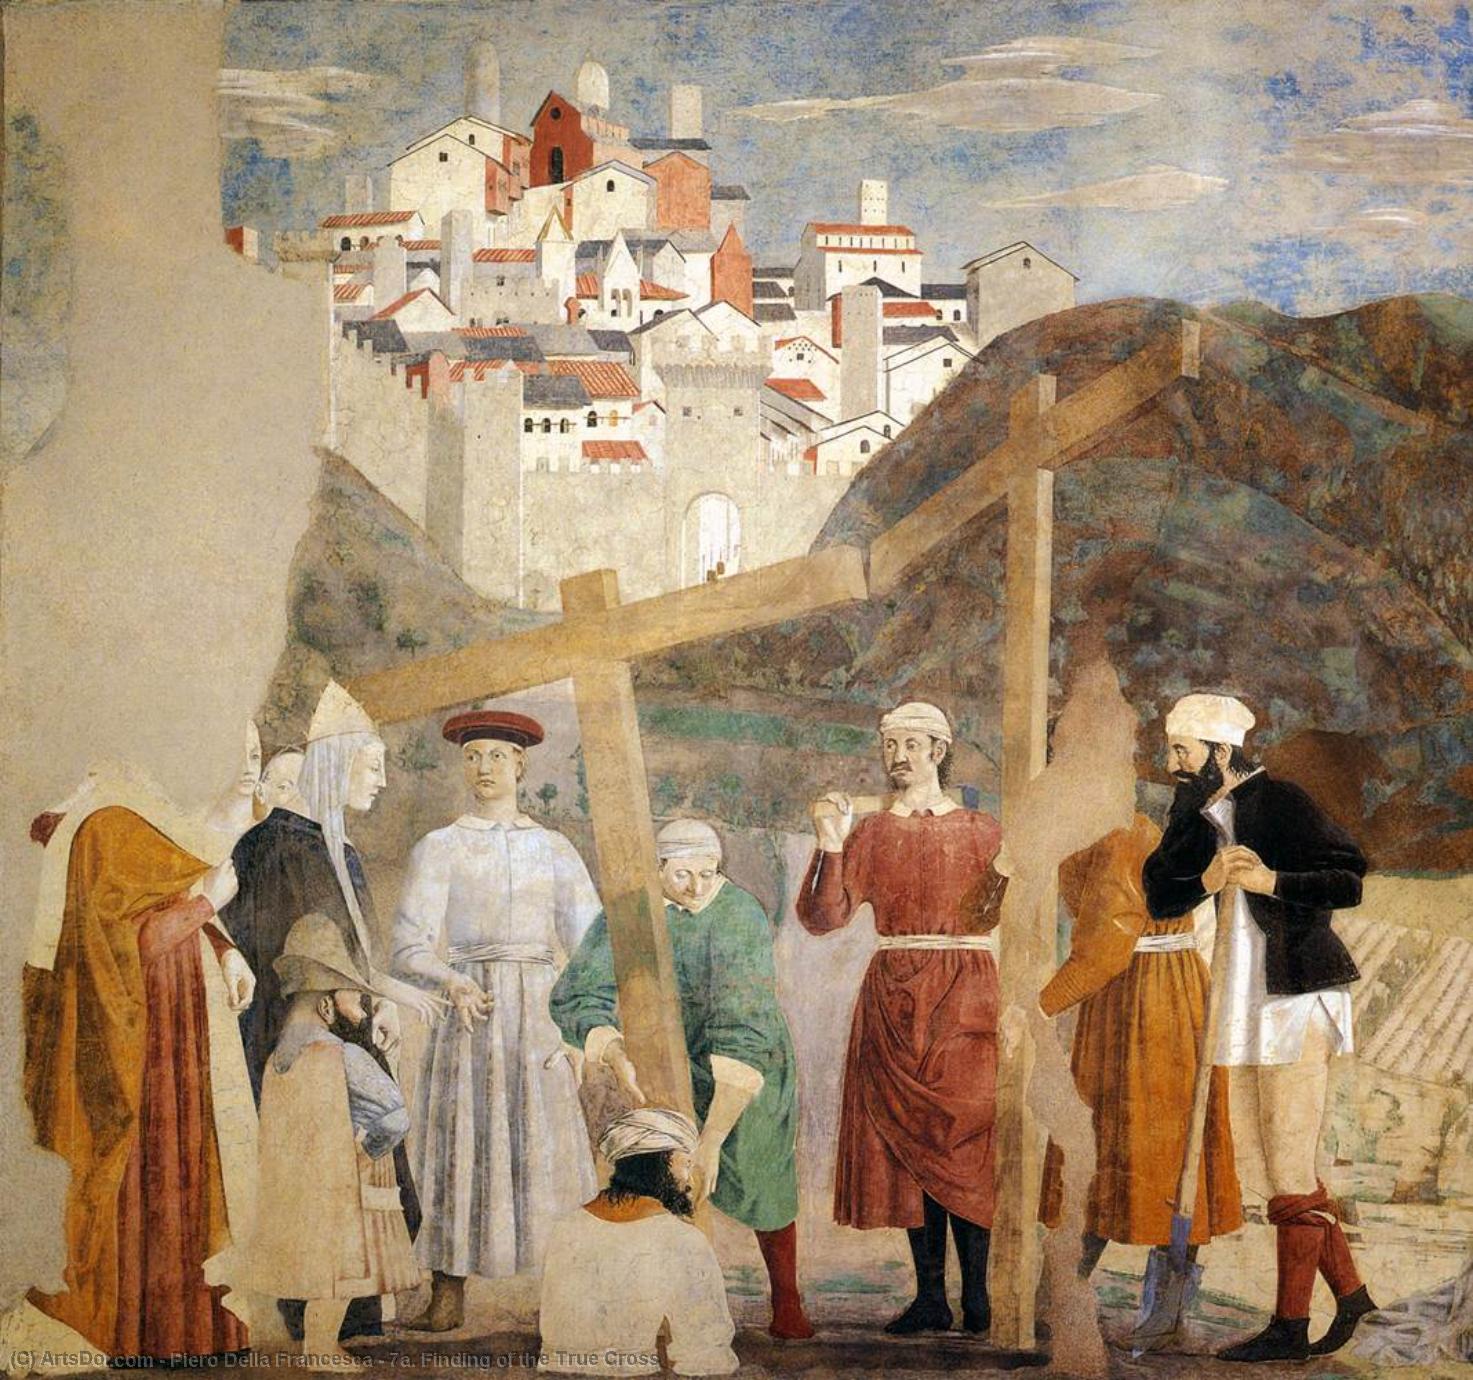 Wikioo.org - Die Enzyklopädie bildender Kunst - Malerei, Kunstwerk von Piero Della Francesca - 7a  auffindend  von  der  wahr  kreuz